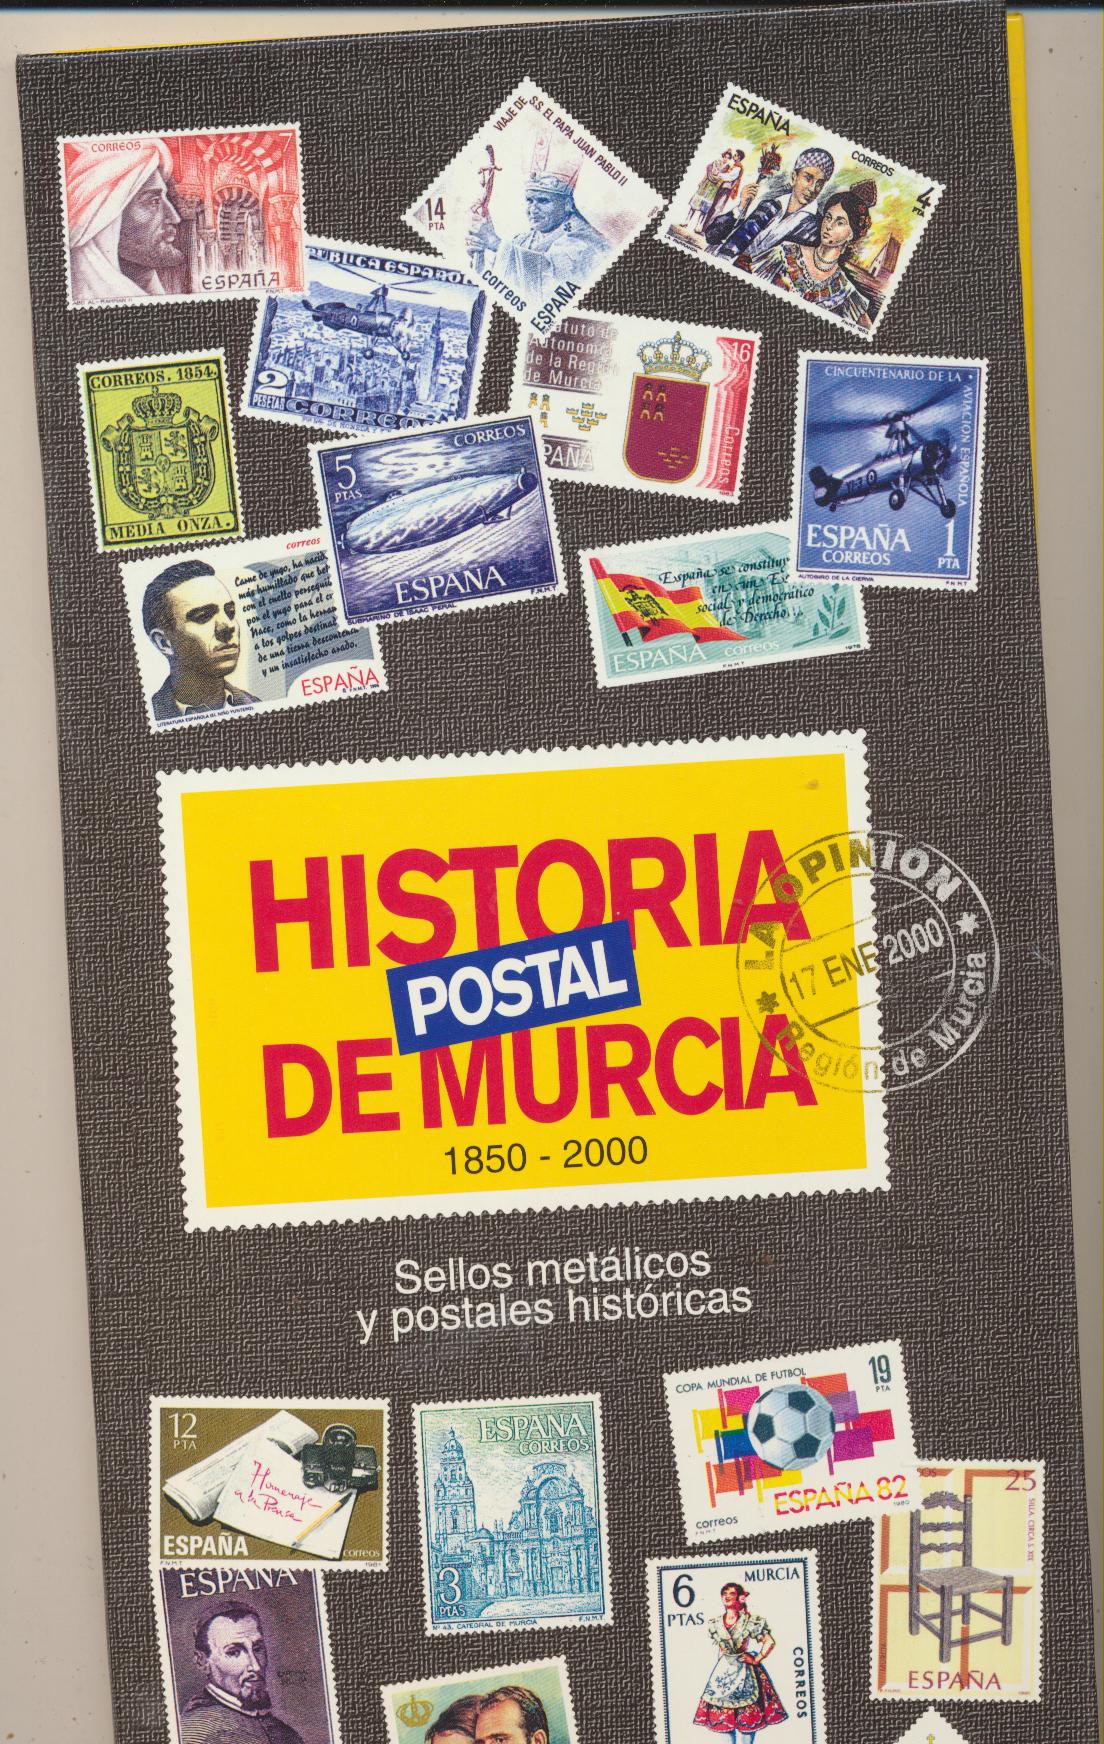 Historia Postal de Murcia 1850-2000. Álbum para pegar los sellos metálicos